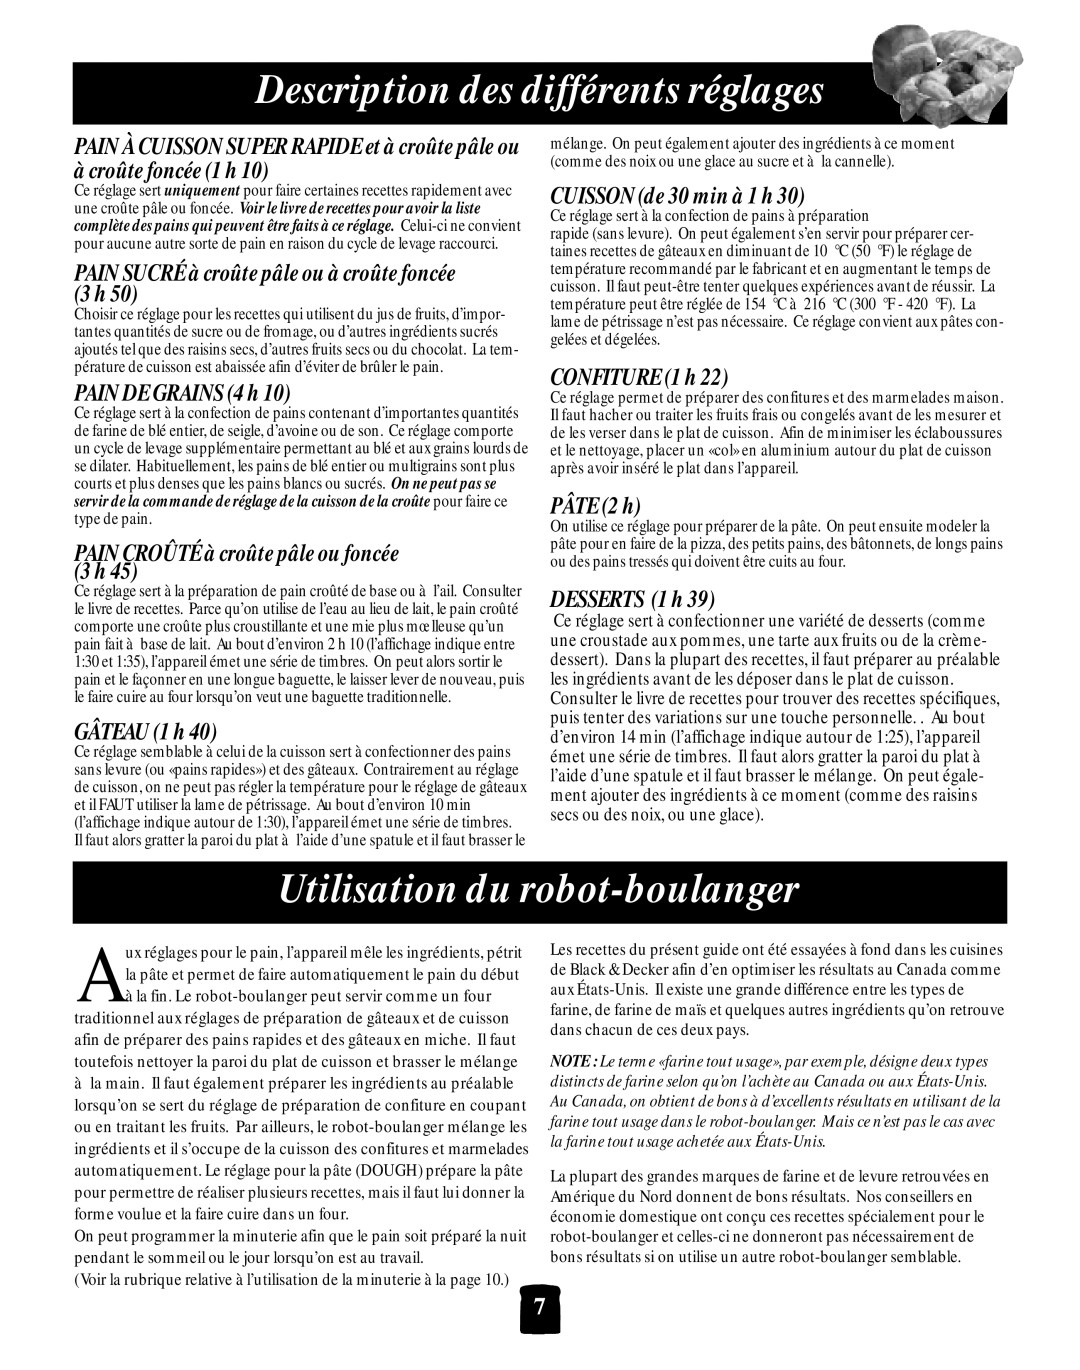 Black & Decker B2005 Utilisation du robot-boulanger, Description des différents réglages, PAIN DE GRAINS4h, GÂTEAU 1h 